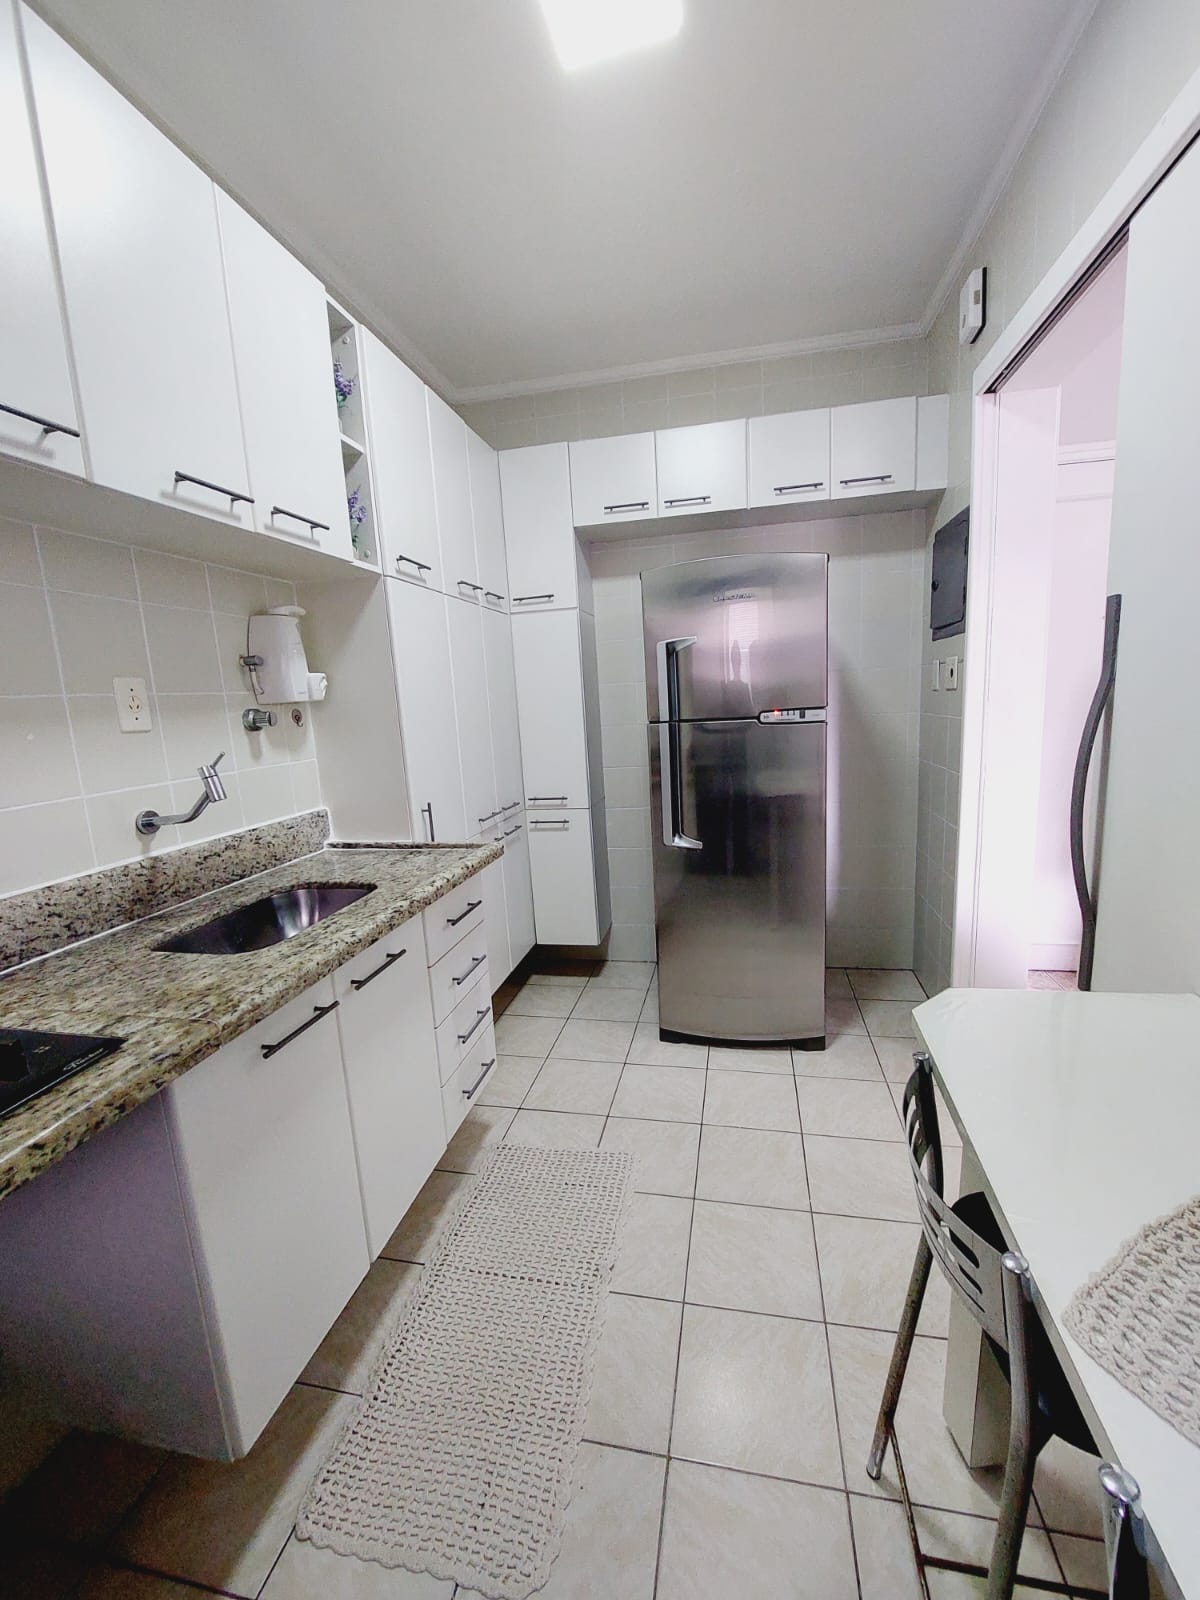 Foto do Imóvel - Lindo Apartamento 1 dorm no Itararé em Sv